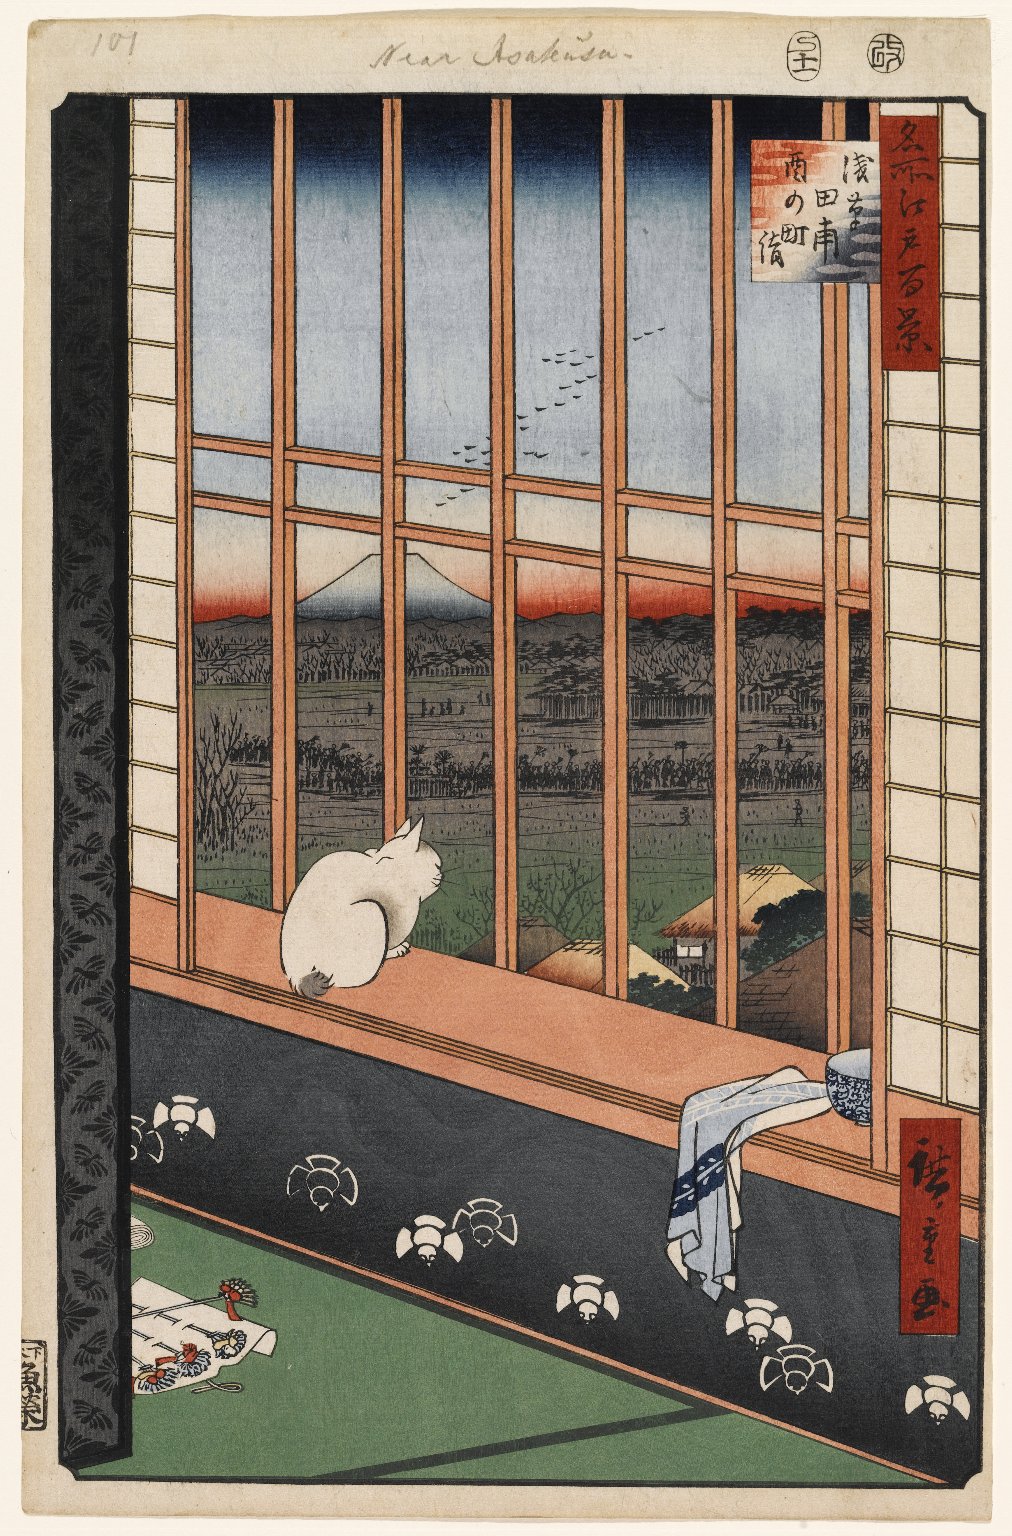 Asakusa rizsföldek és Torinomachi fesztivál by  Hiroshige - 1857 - 36 x 23.5 cm 